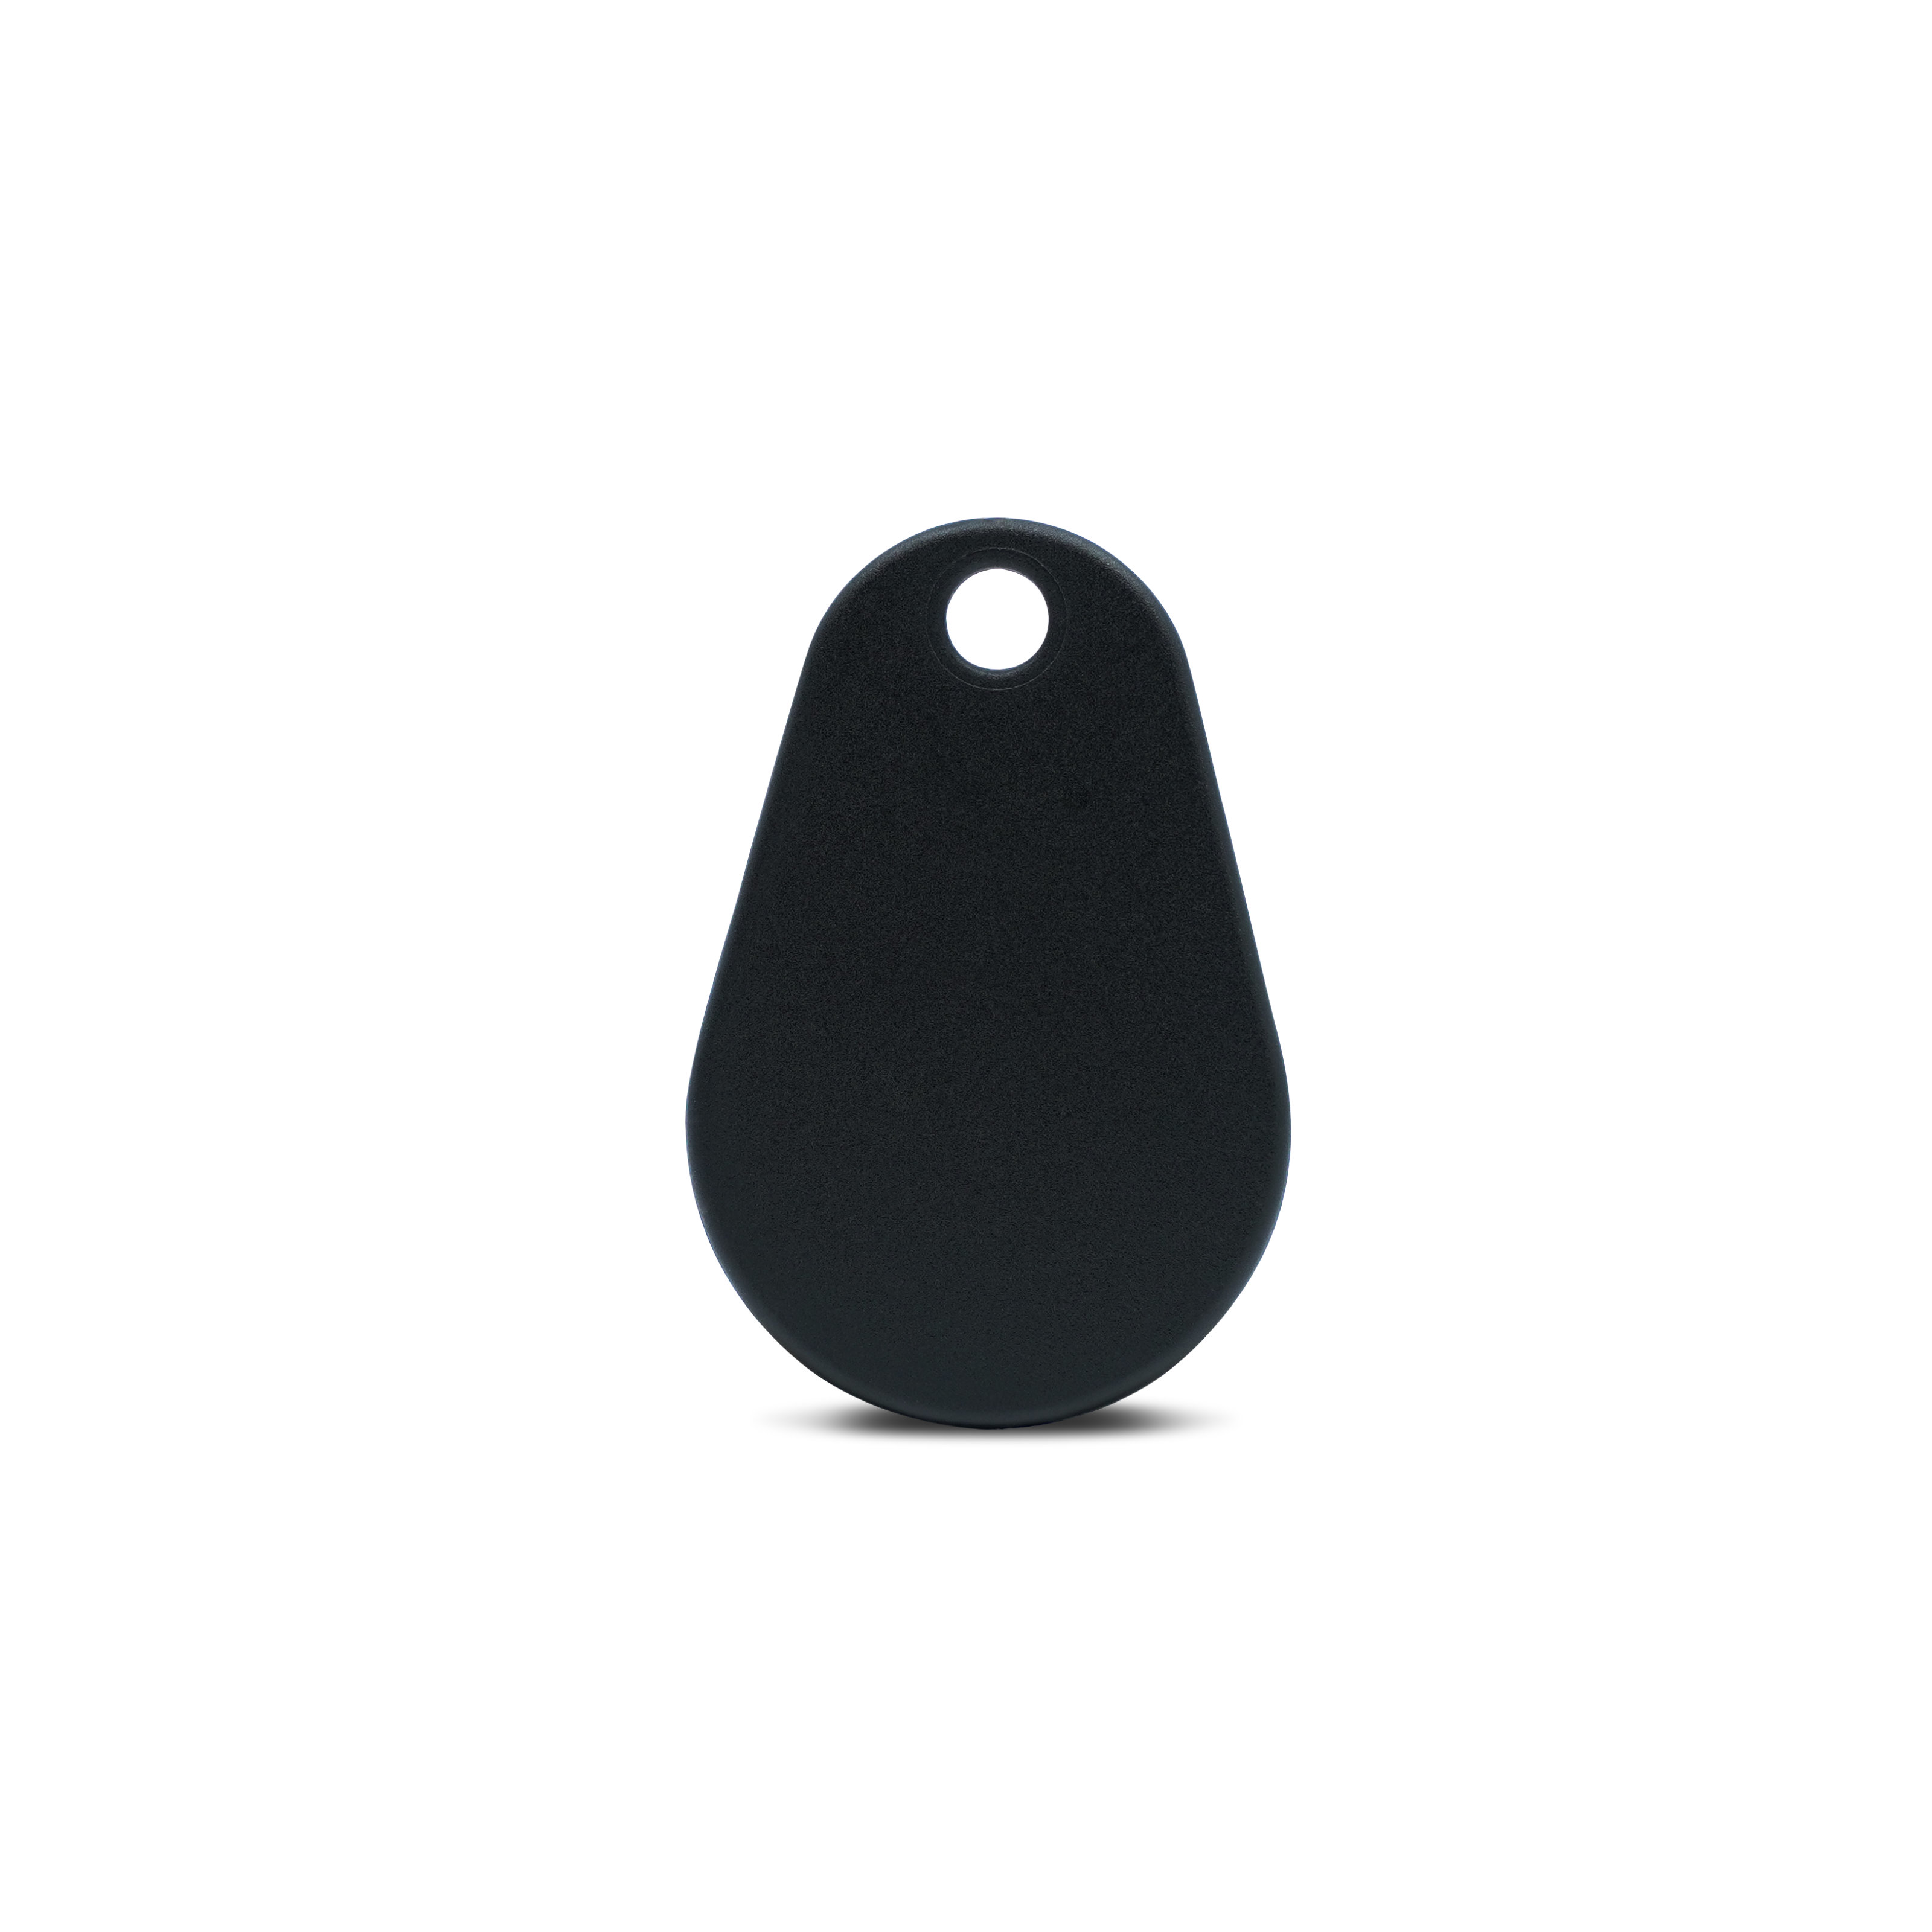 Rückseite NFC Schlüsselanhänger in schwarz aus Polyamid